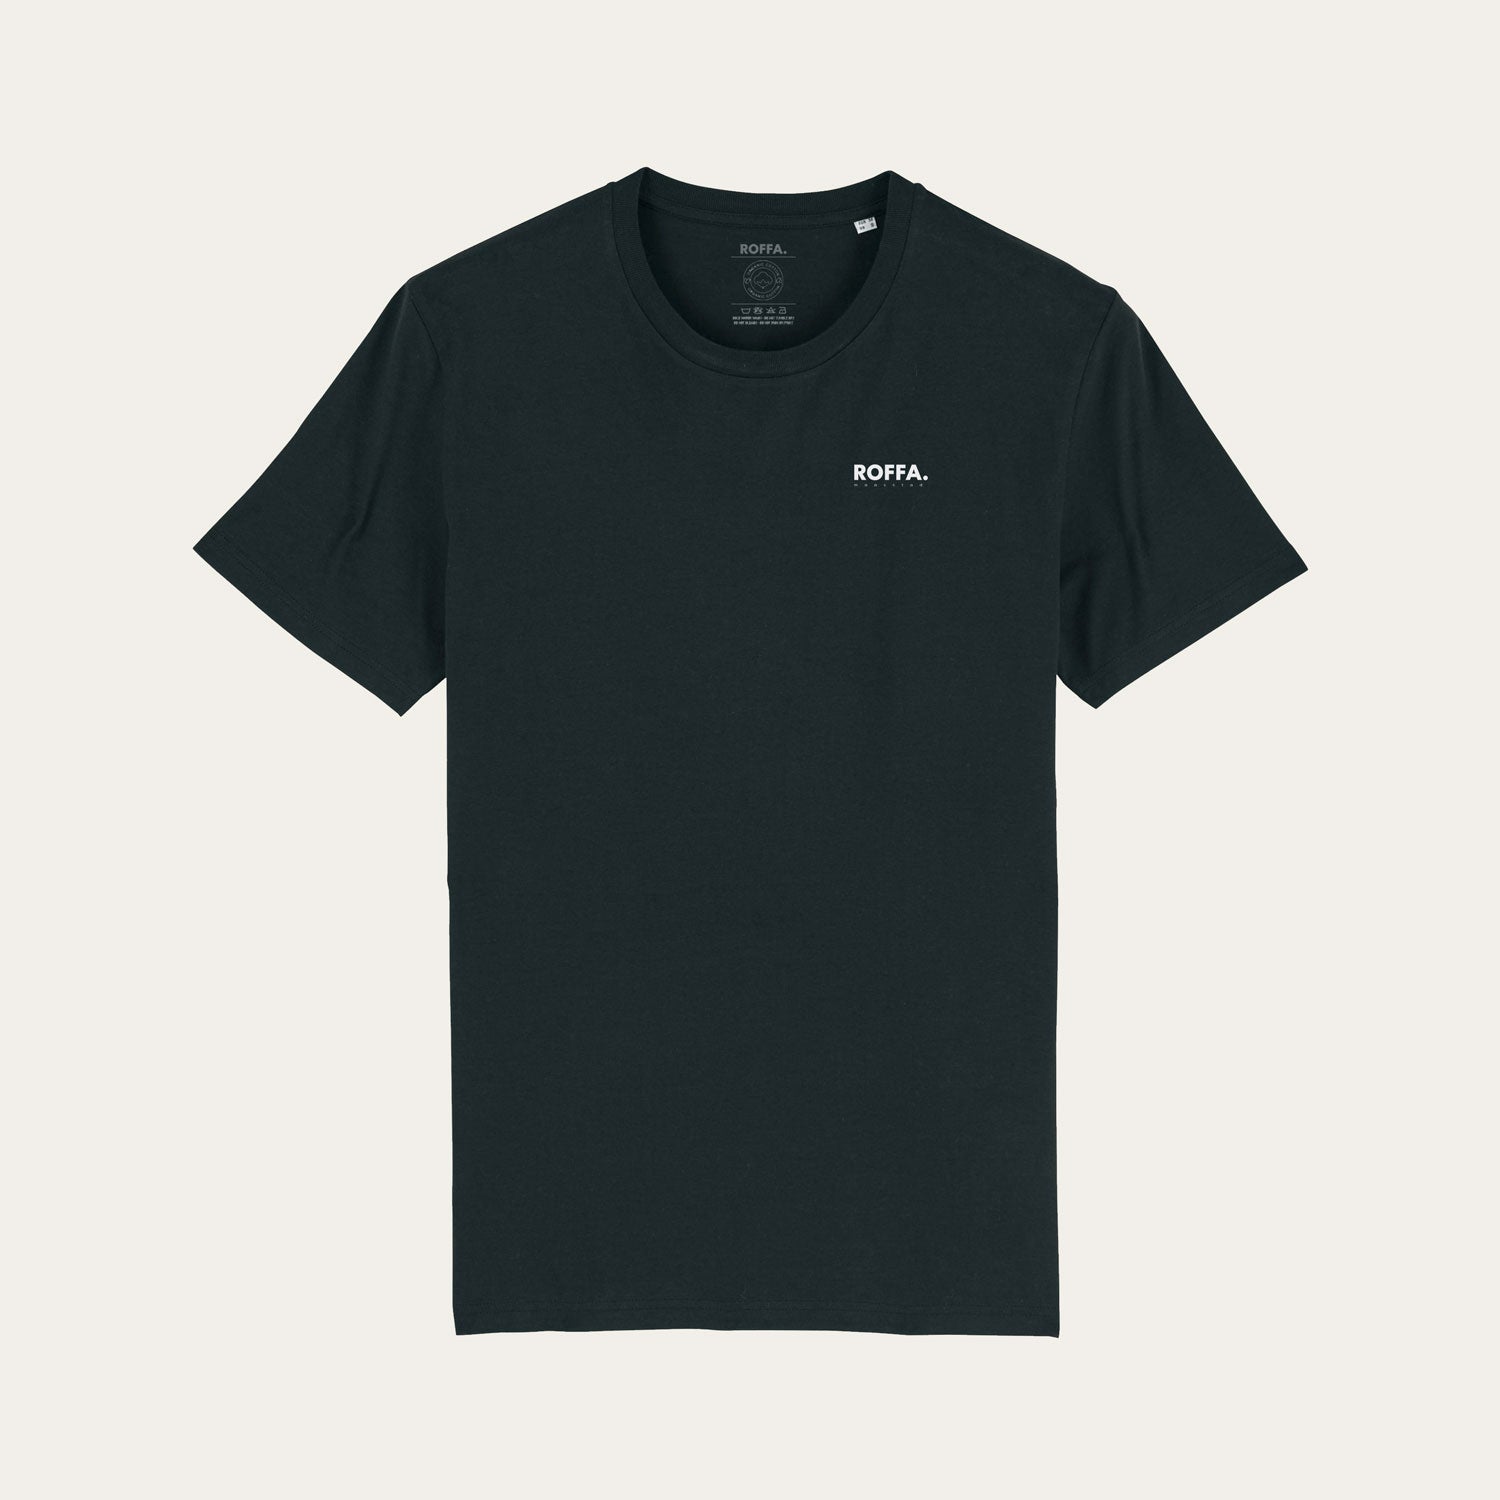 Zwart t-shirt met Roffa en rotterdam logo